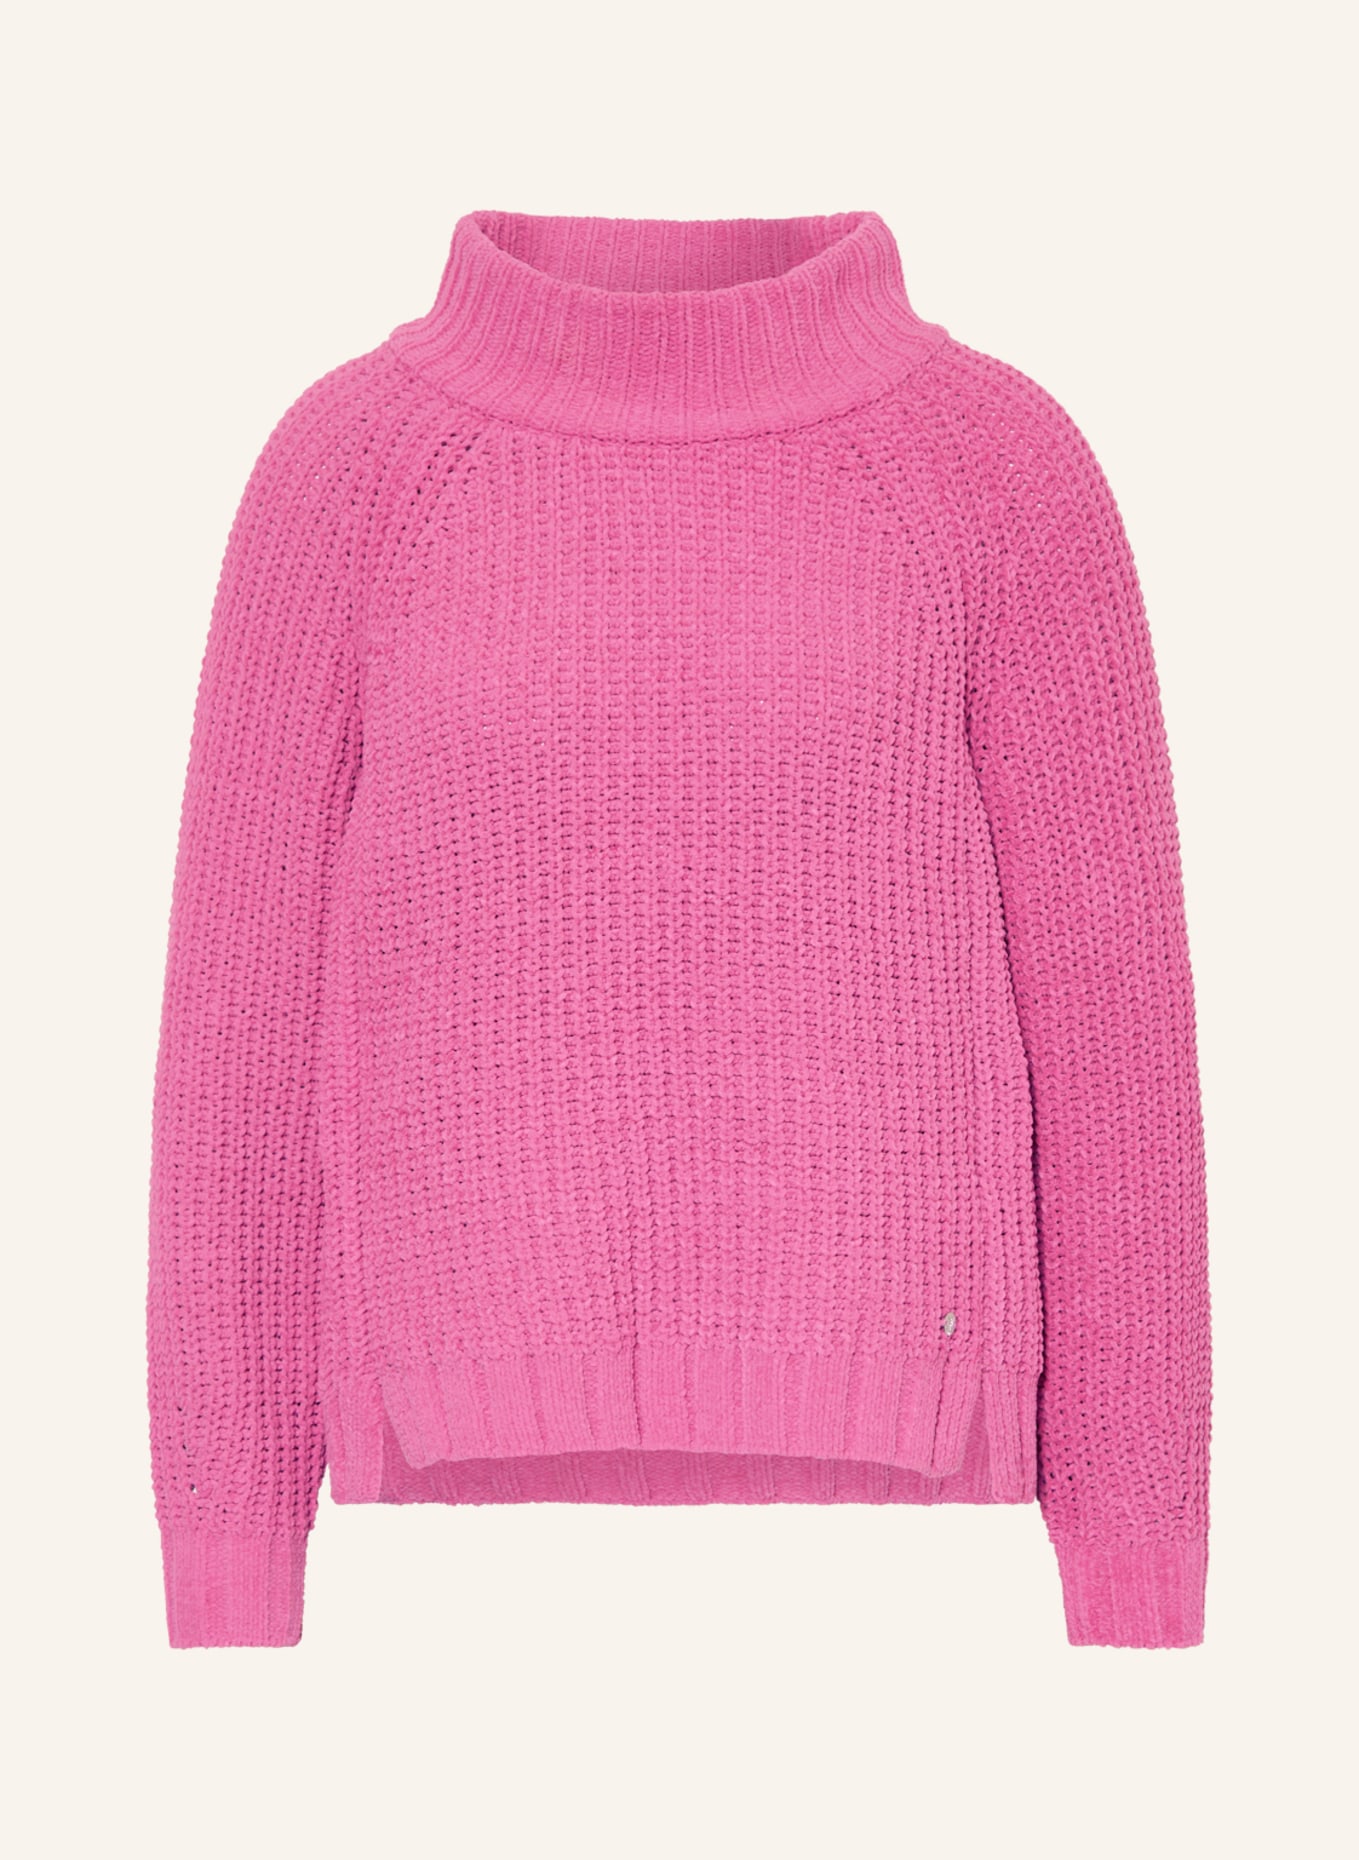 monari Sweater, Color: PINK (Image 1)